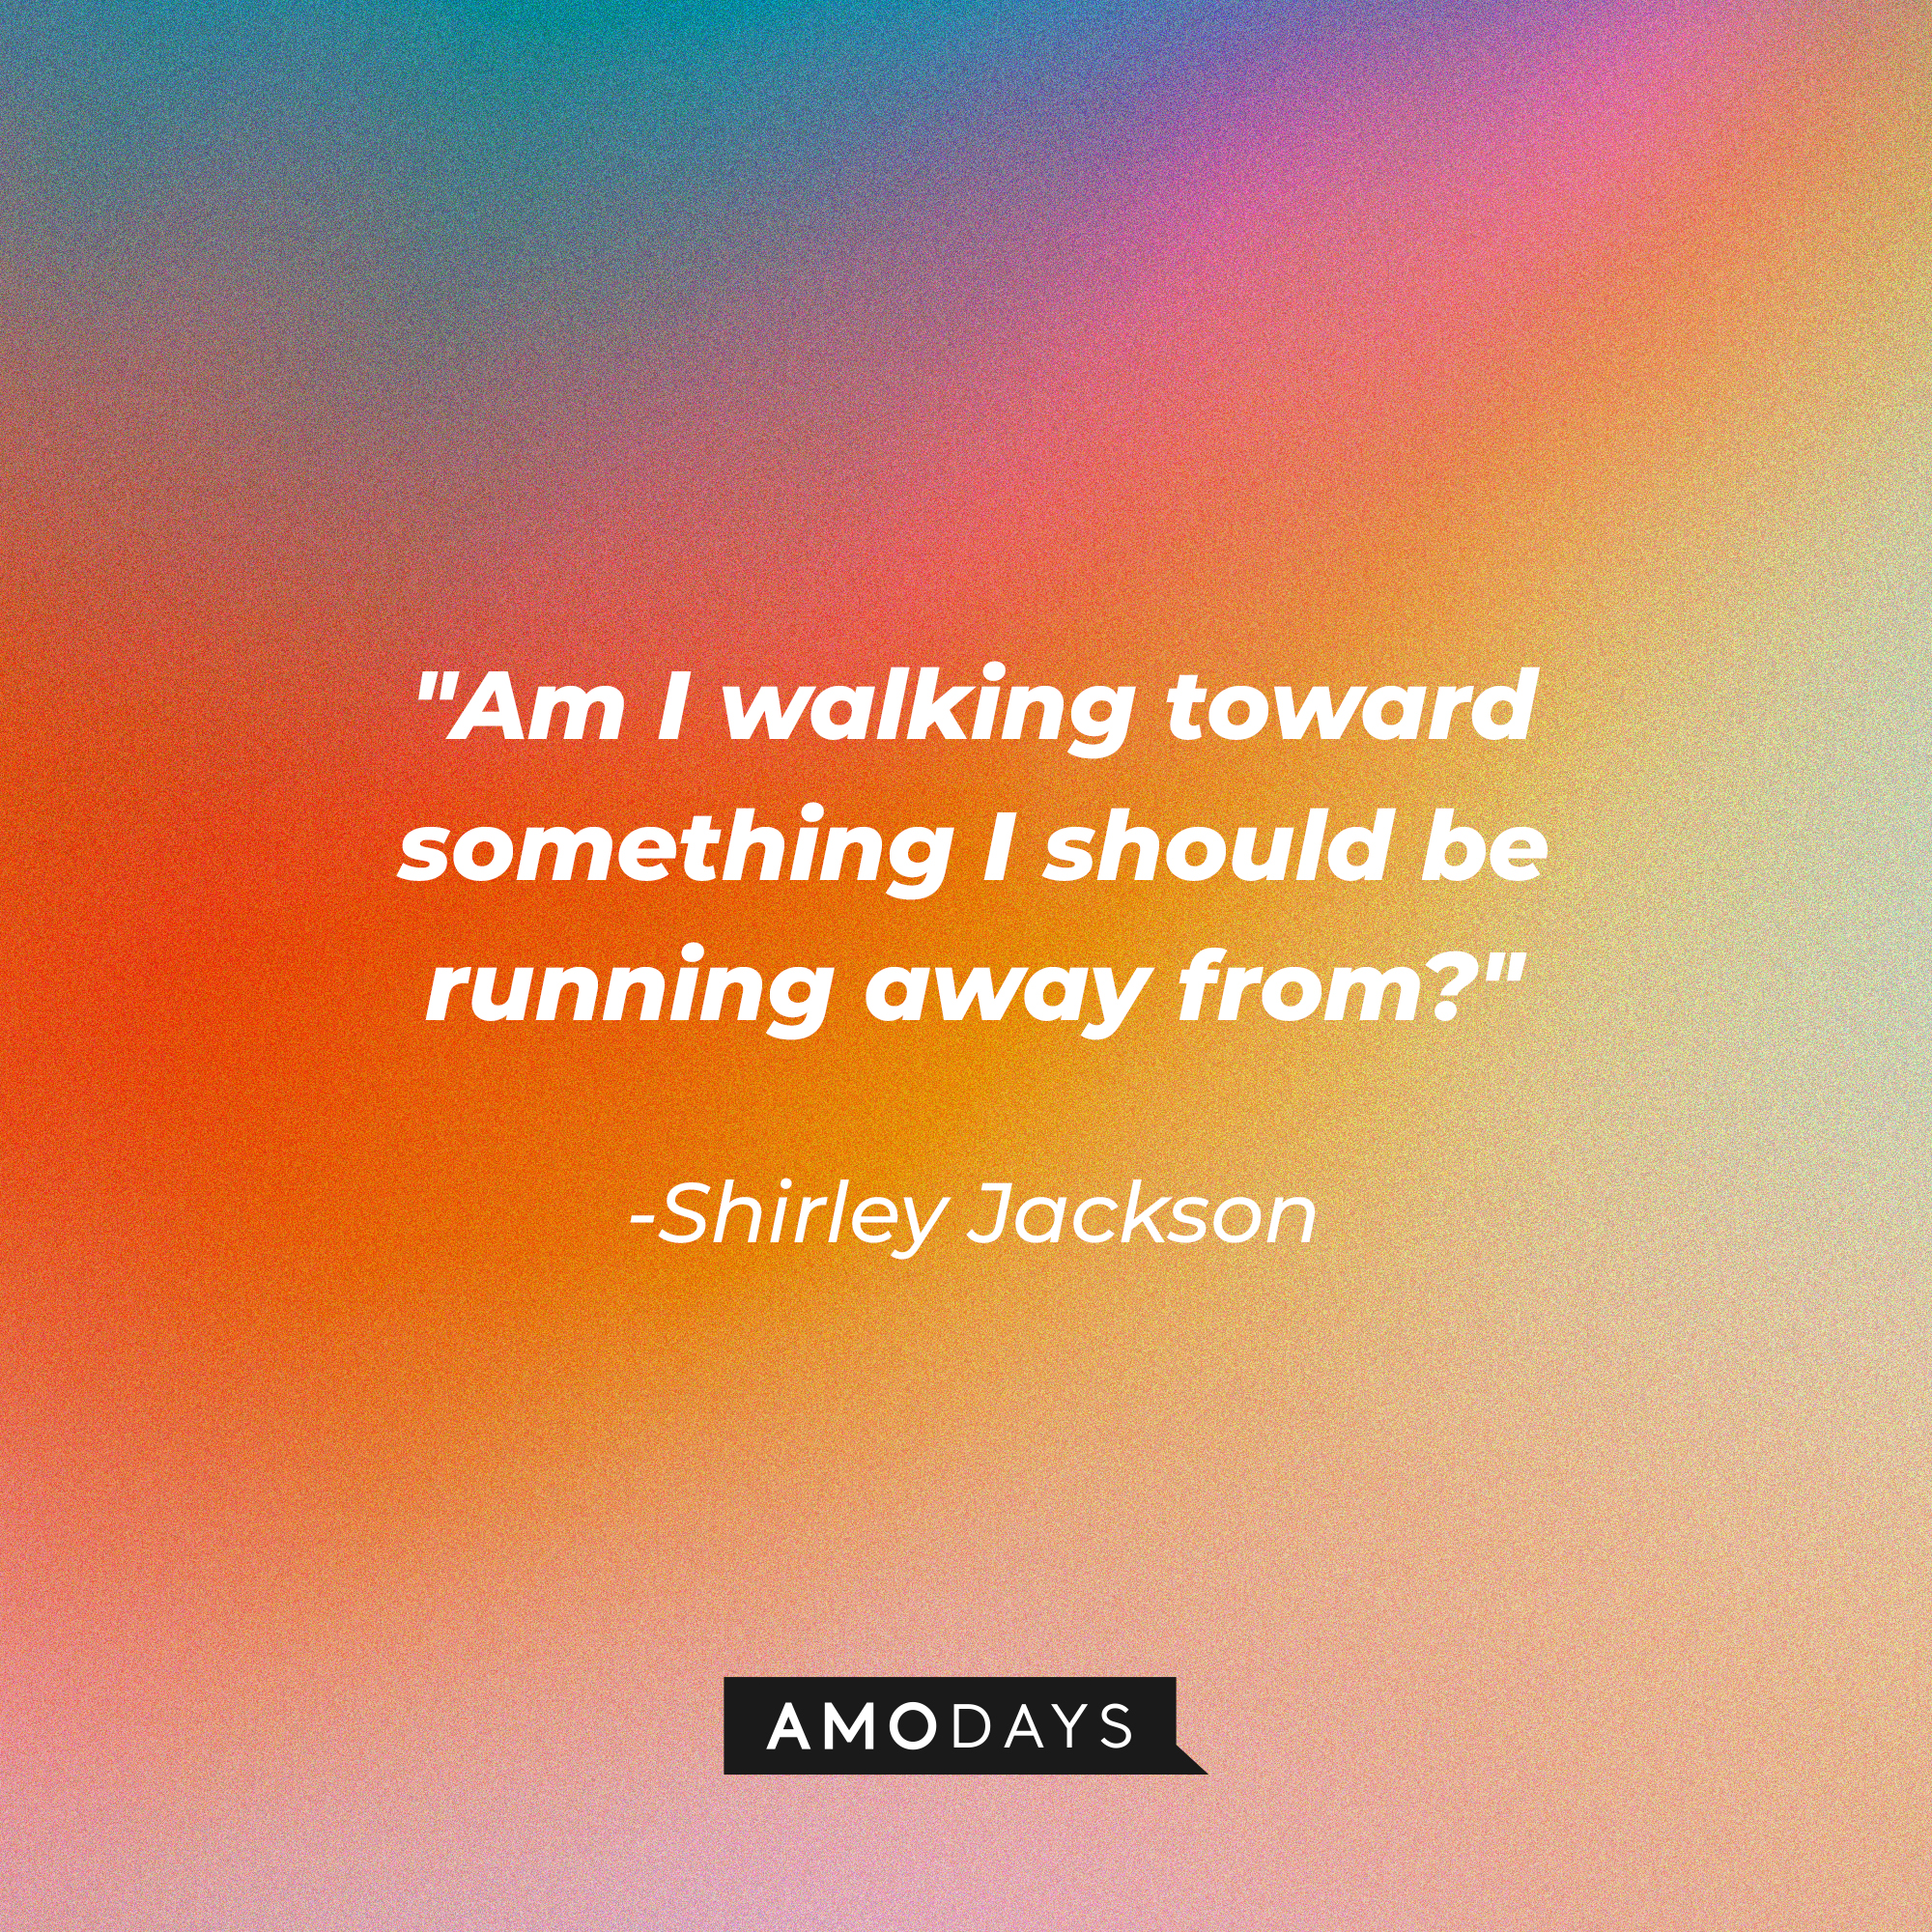 Shirley Jackson's quote:"Am I walking toward something I should be running away from?" | Image: AmoDays